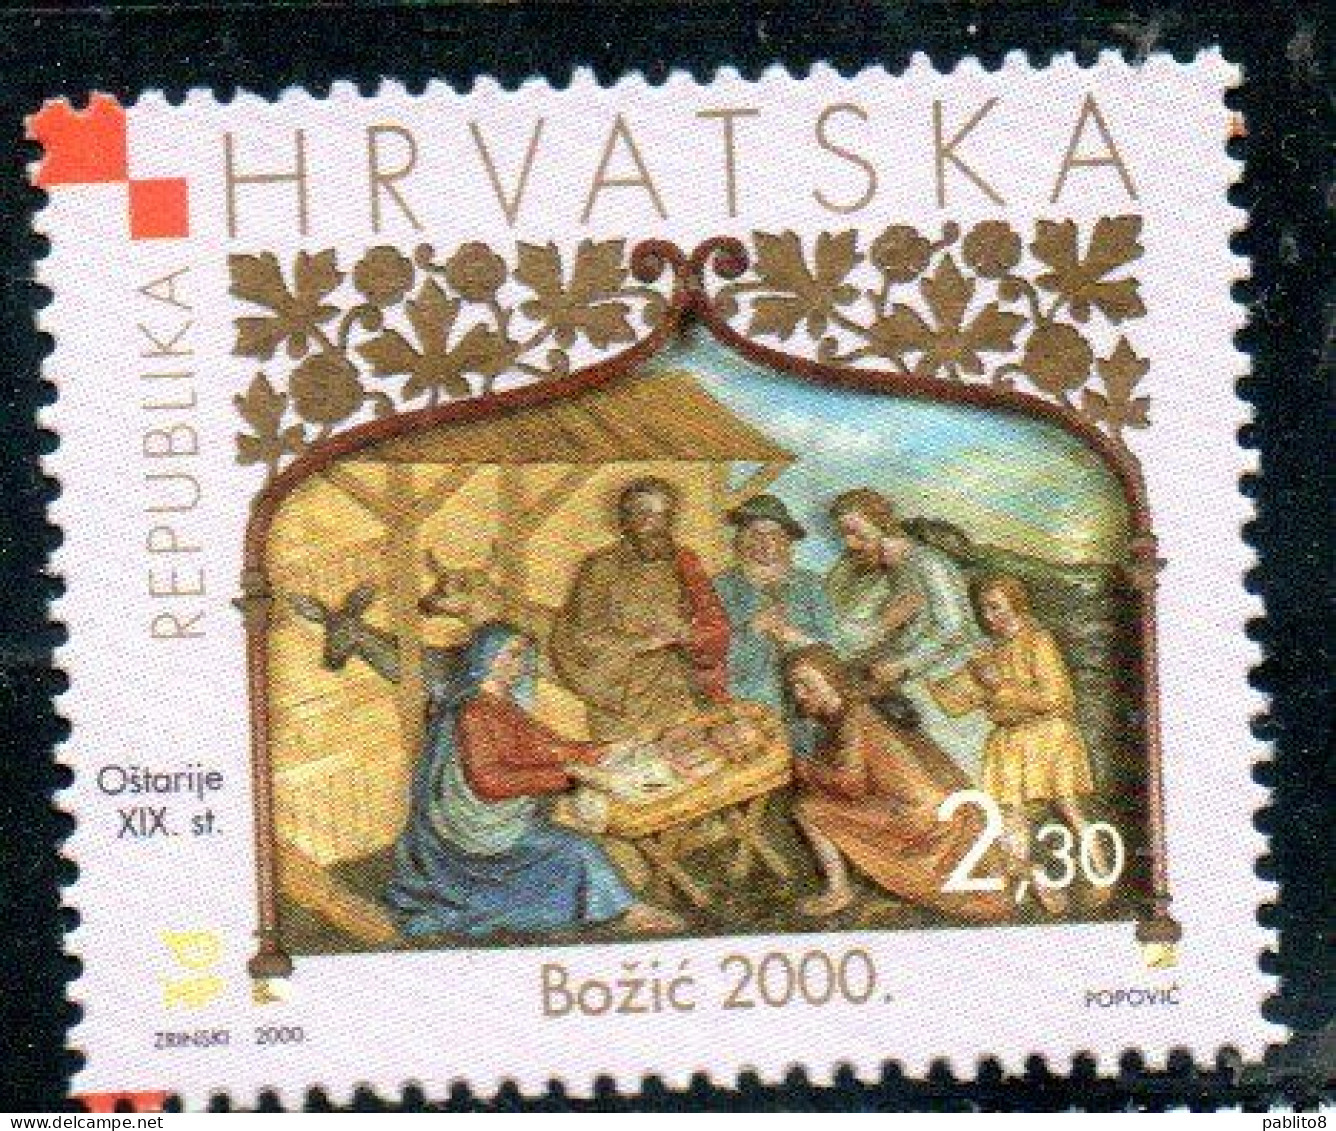 HRVATSKA CROATIA CROAZIA 2000 CHRISTMAS SRETAN BOZIC NATALE NOEL WEIHNACHTEN NAVIDAD 2.30k MNH - Croatie